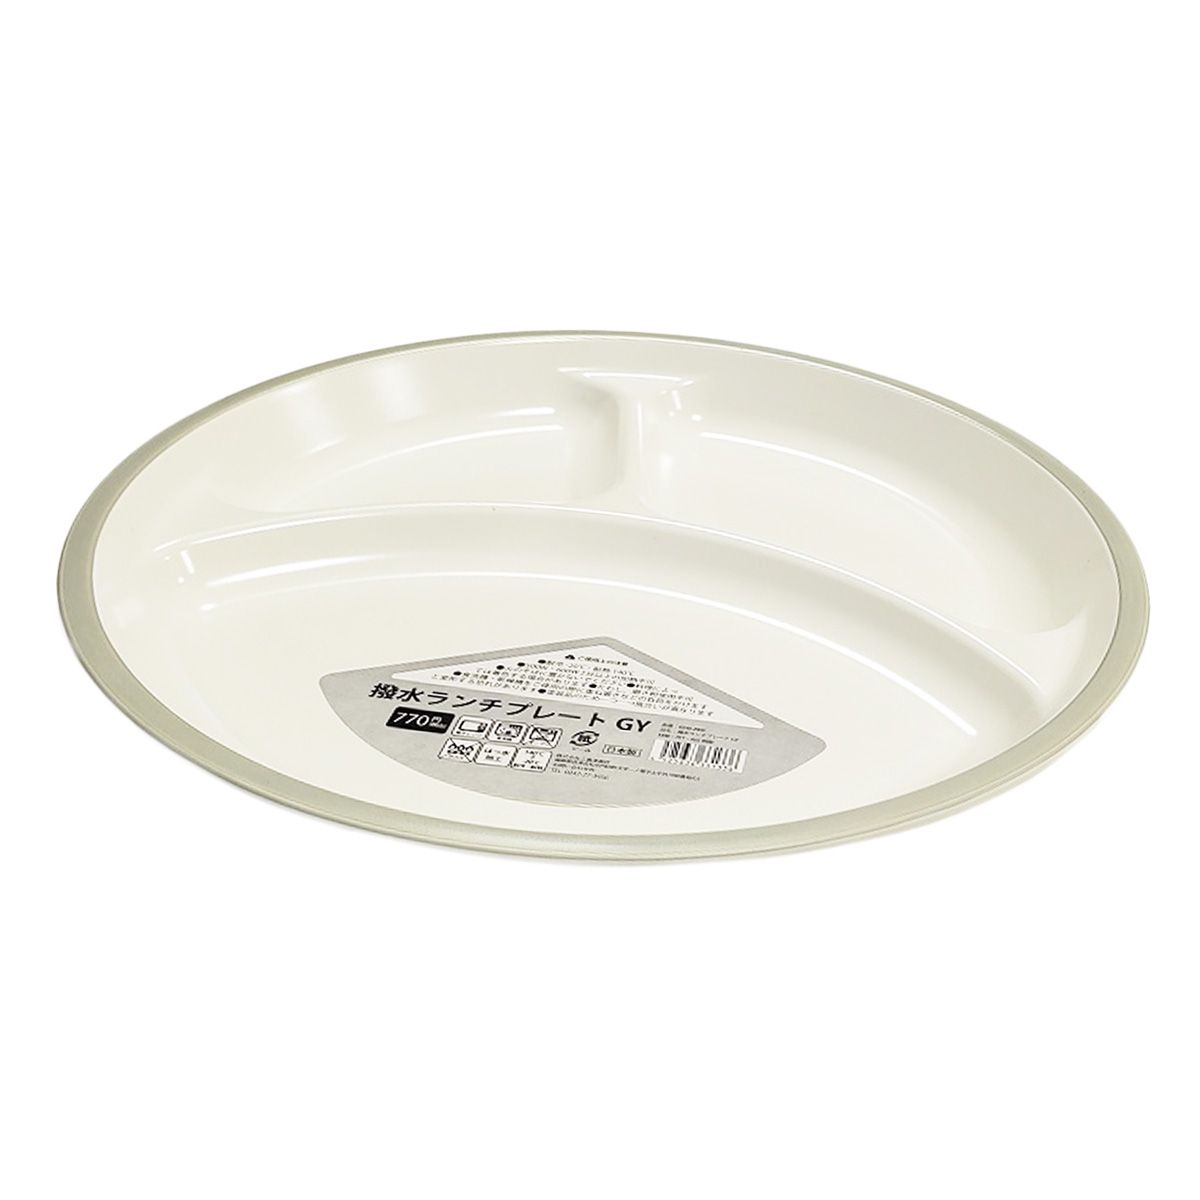 皿 仕切り皿 撥水ランチプレートワンプレートご飯  グレー 9001/342025